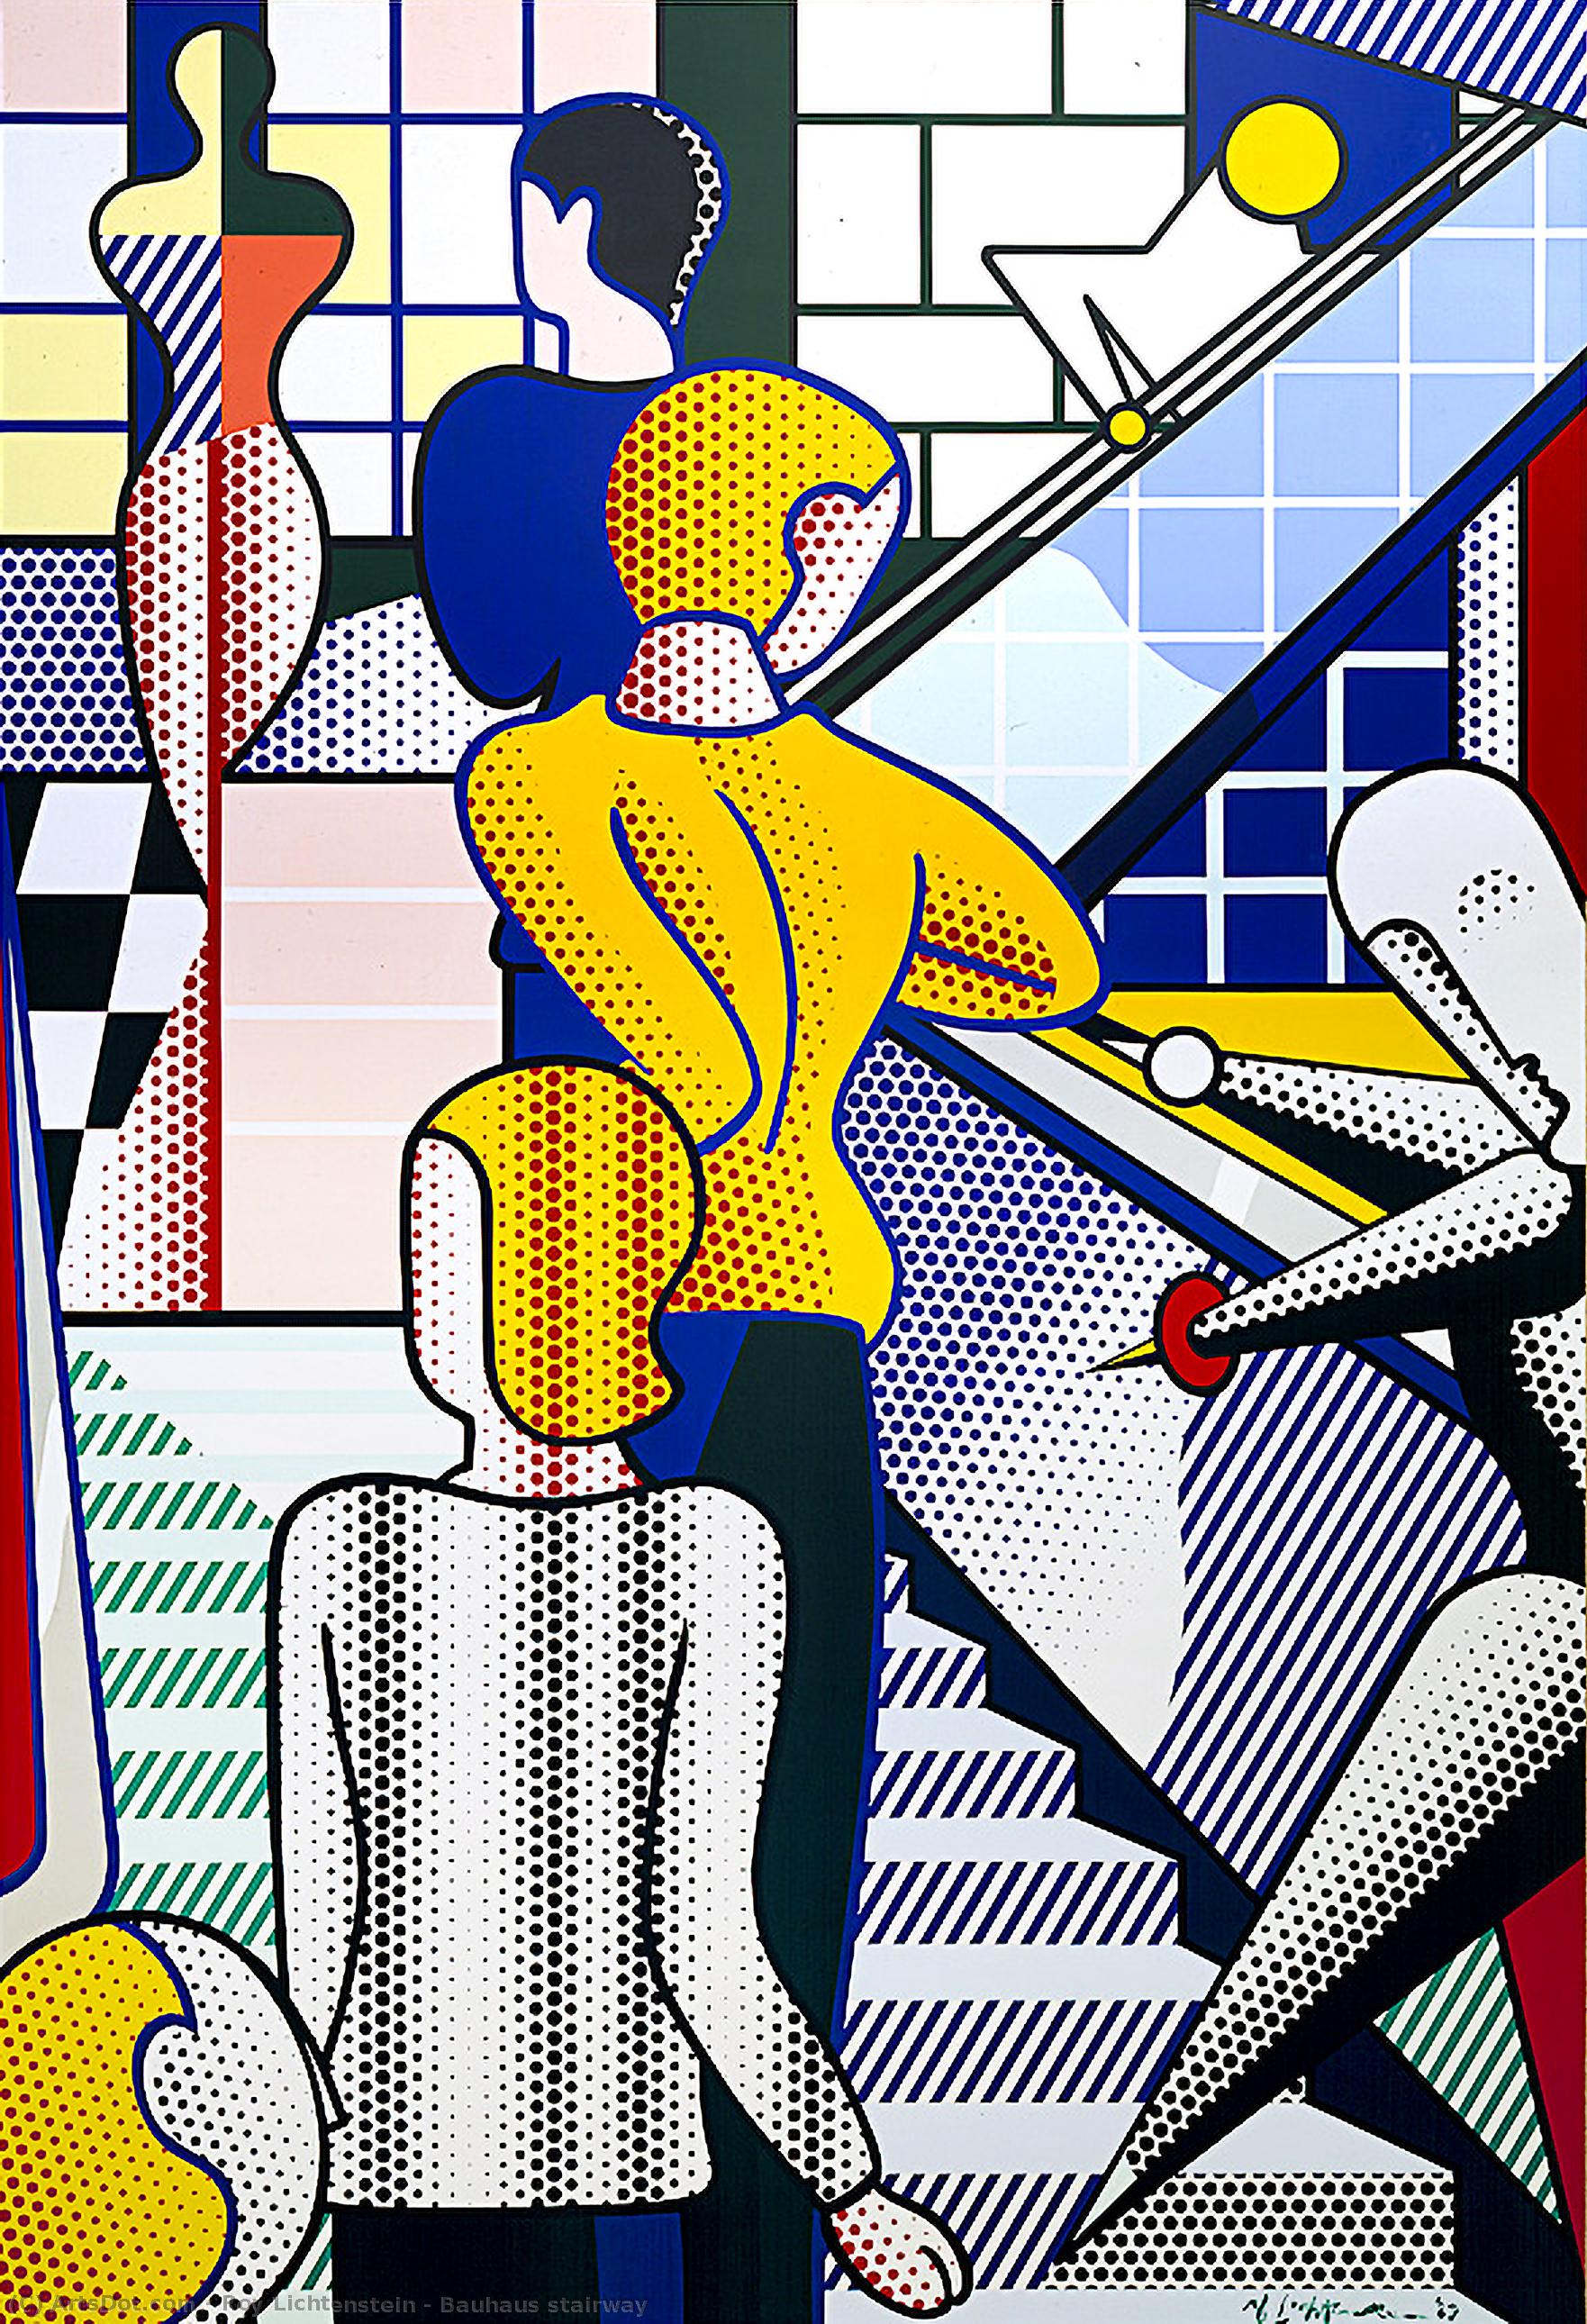 Wikoo.org - موسوعة الفنون الجميلة - اللوحة، العمل الفني Roy Lichtenstein - Bauhaus stairway